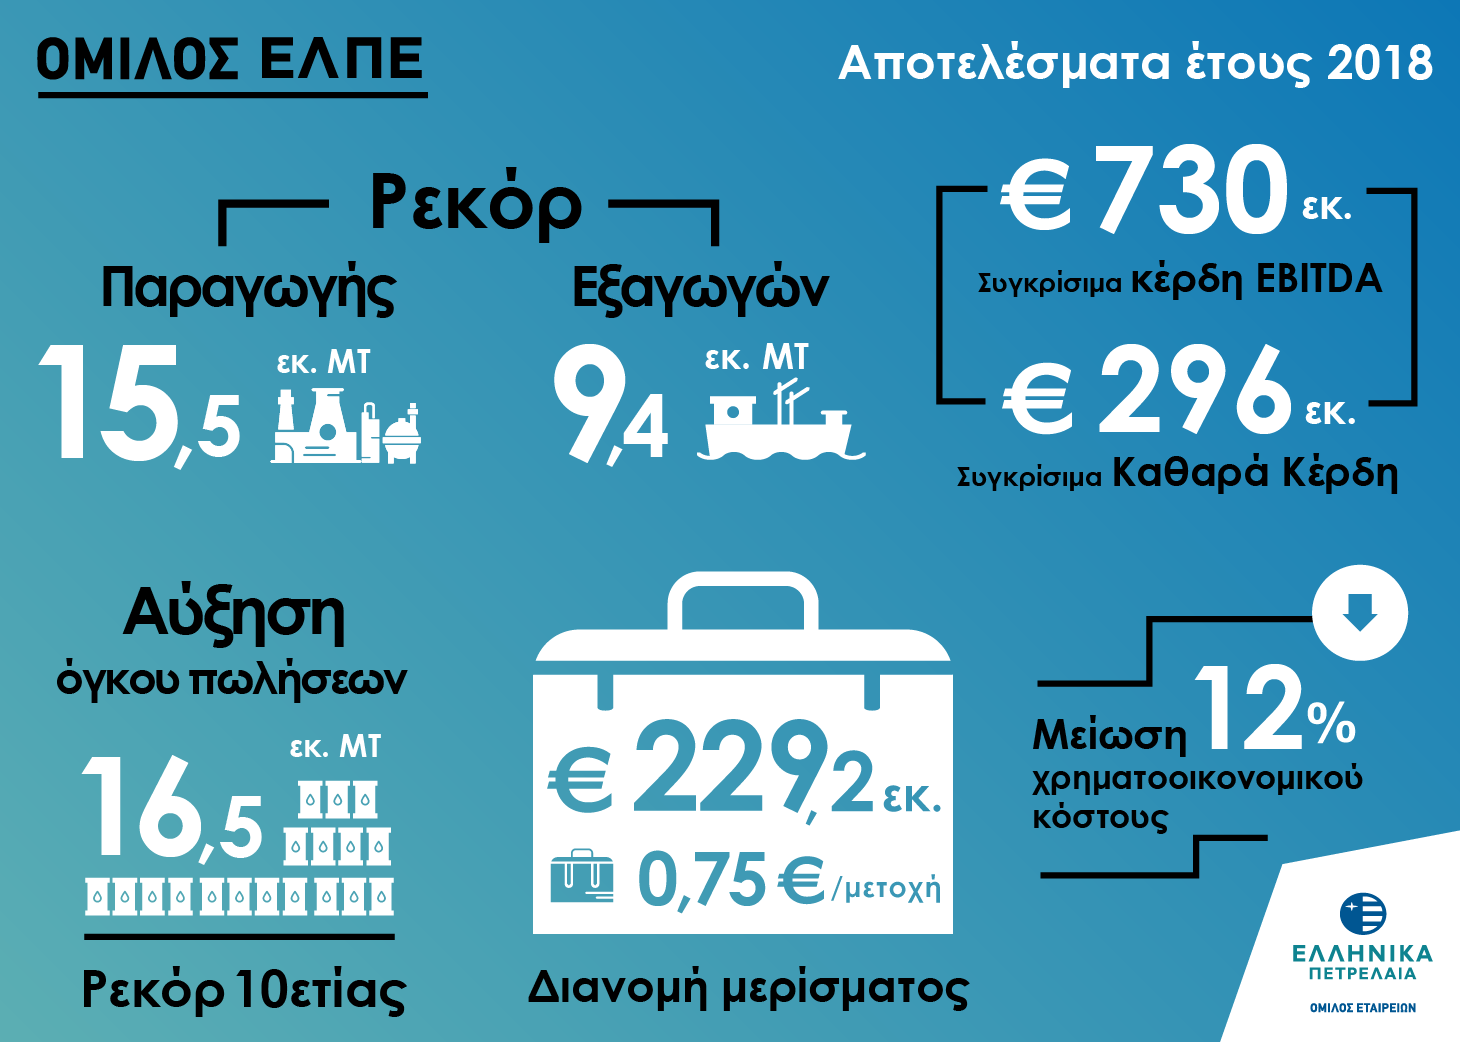 Οικονομικά αποτελέσματα για τα Ελληνικά Πετρέλαια ΑΕ- Δήλωση κ. Τσοτσορού